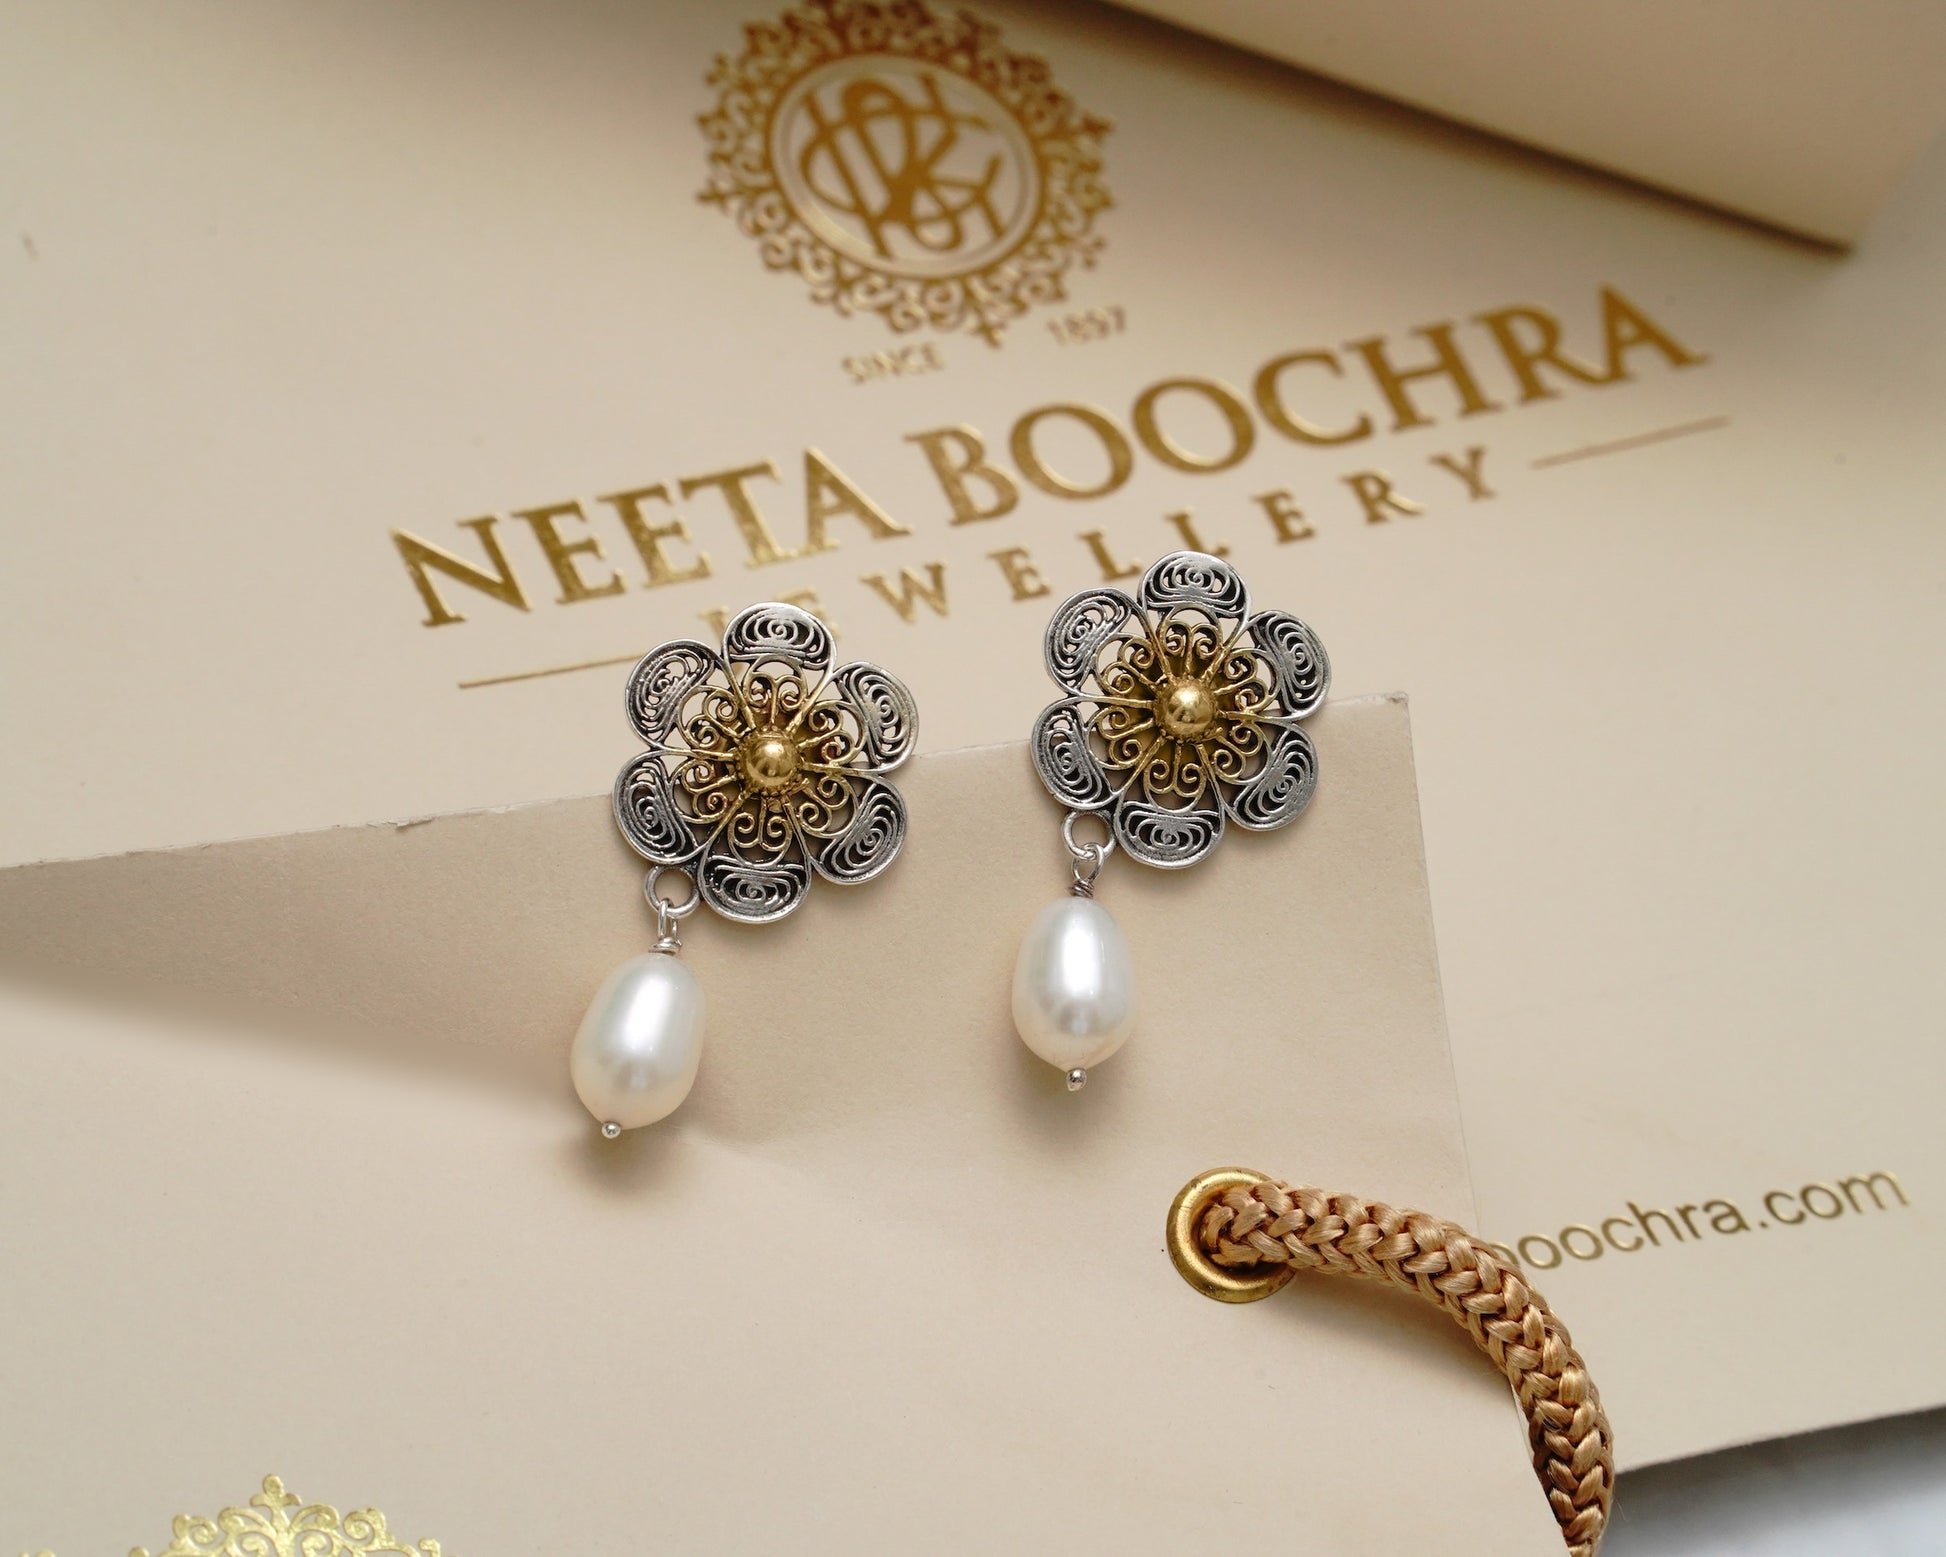 925 Silver Two Tone Earring with Pearl Drop - Neeta Boochra Jewellery